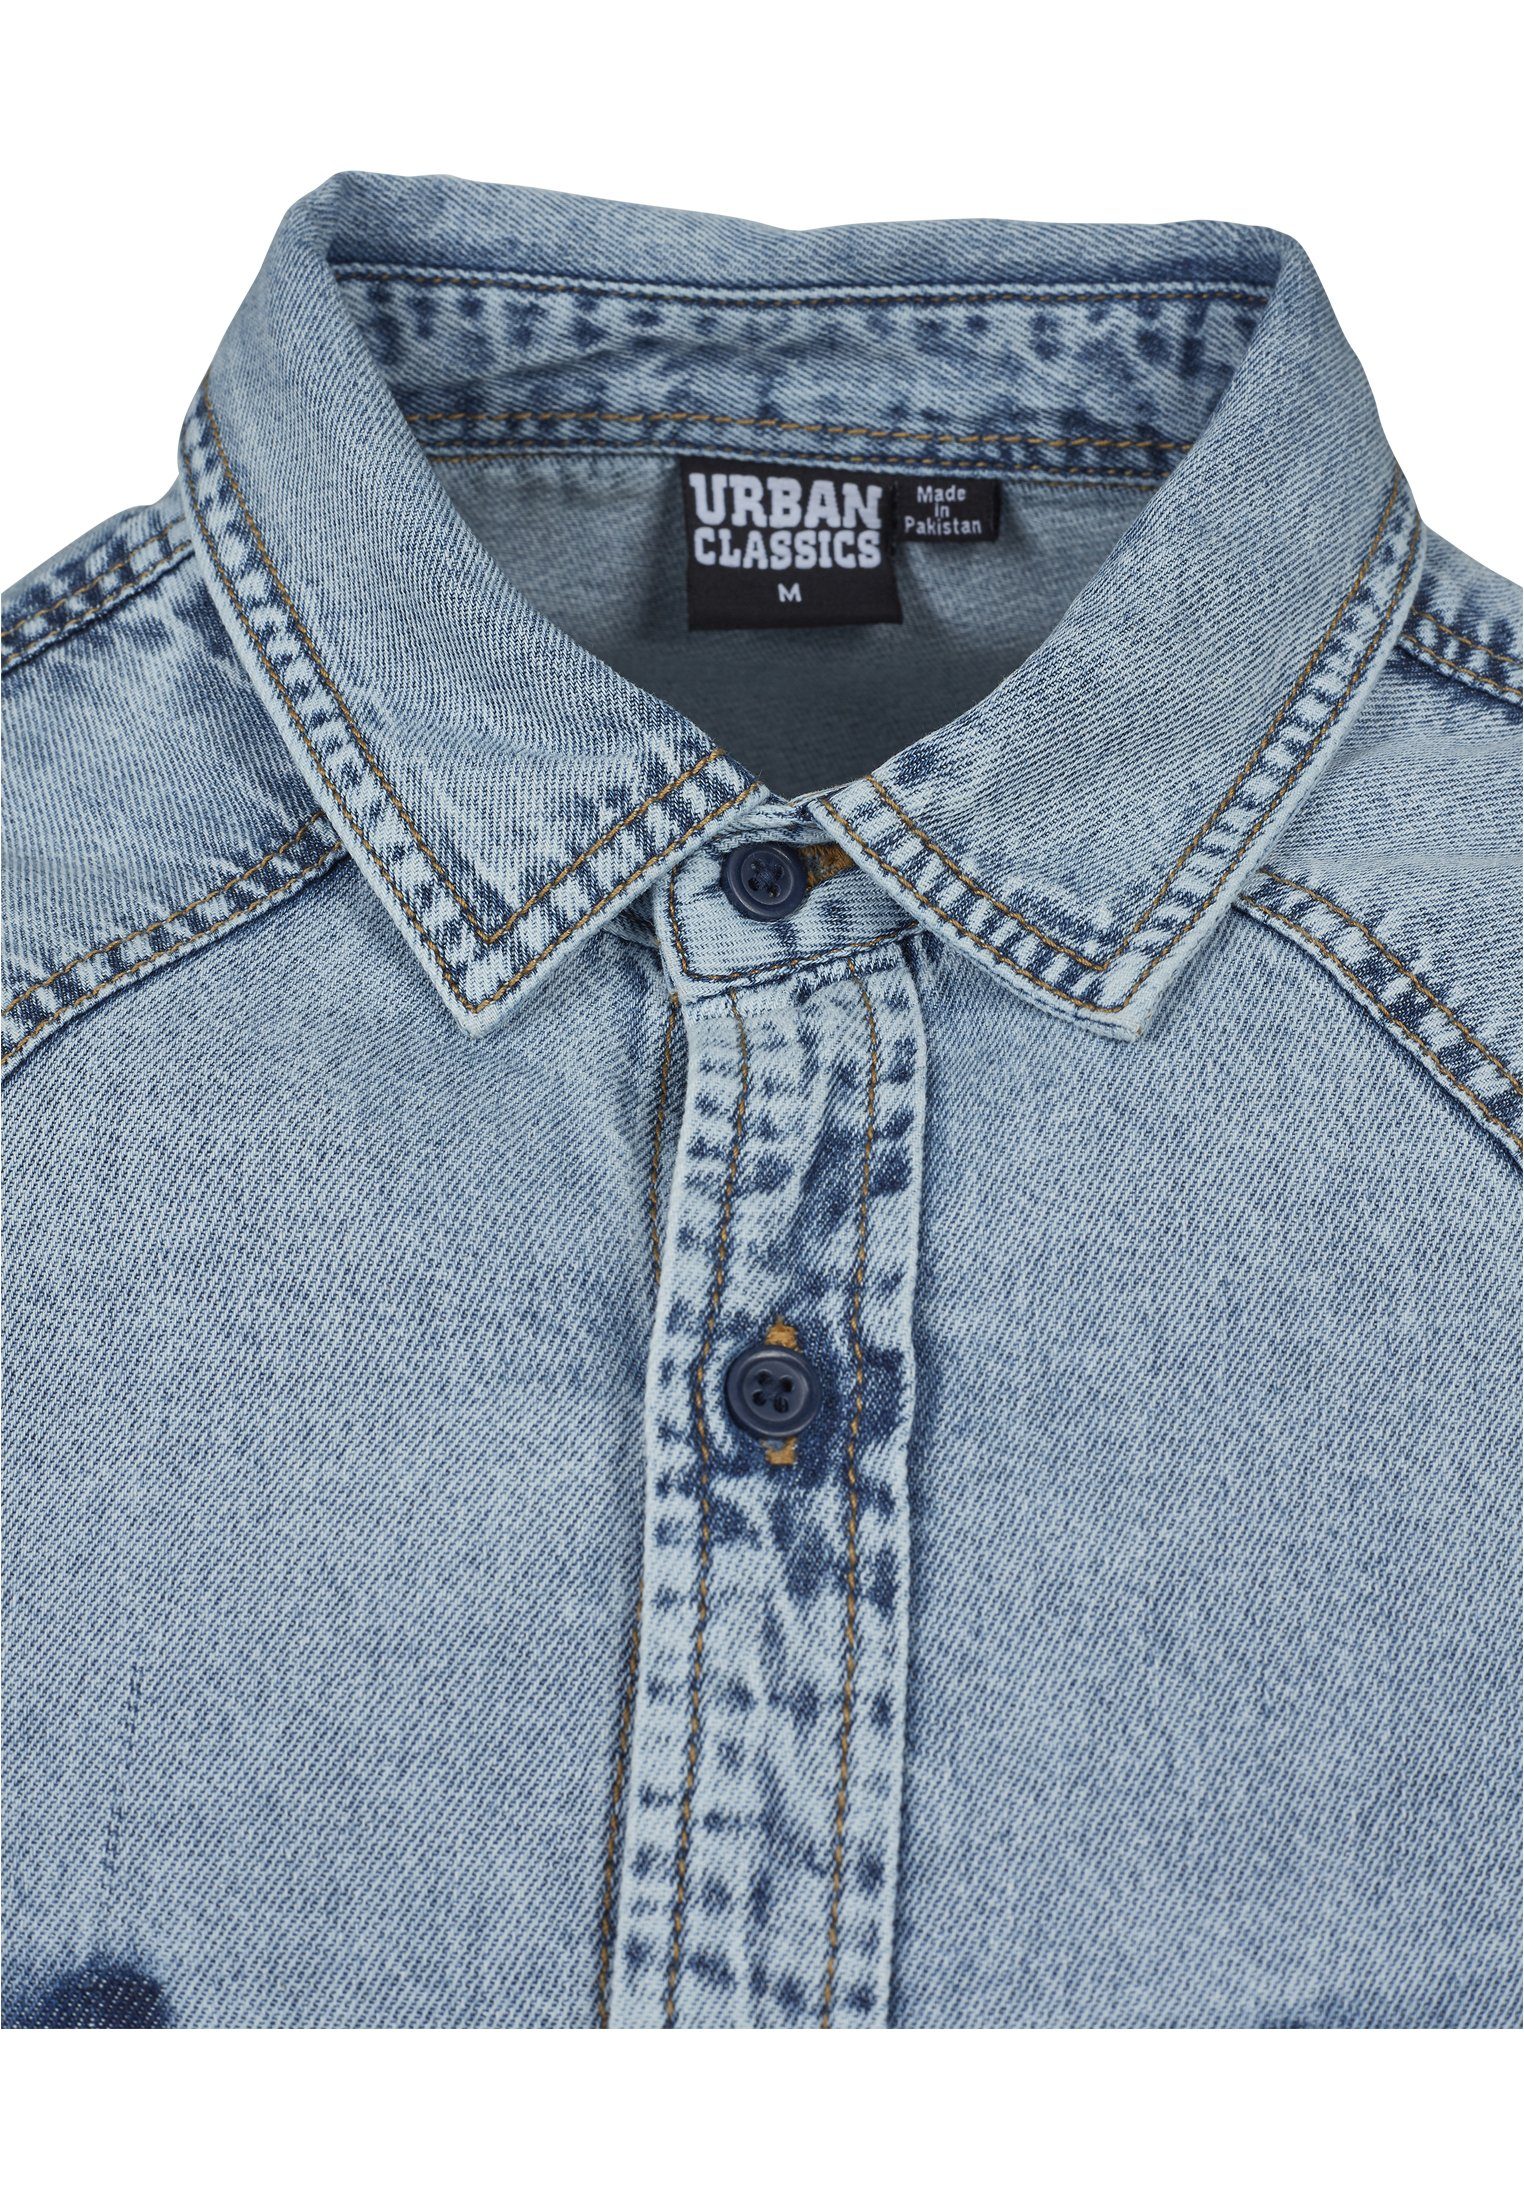 freshblue (1-tlg) URBAN Denim Pocket wash Langarmhemd CLASSICS Shirt Herren